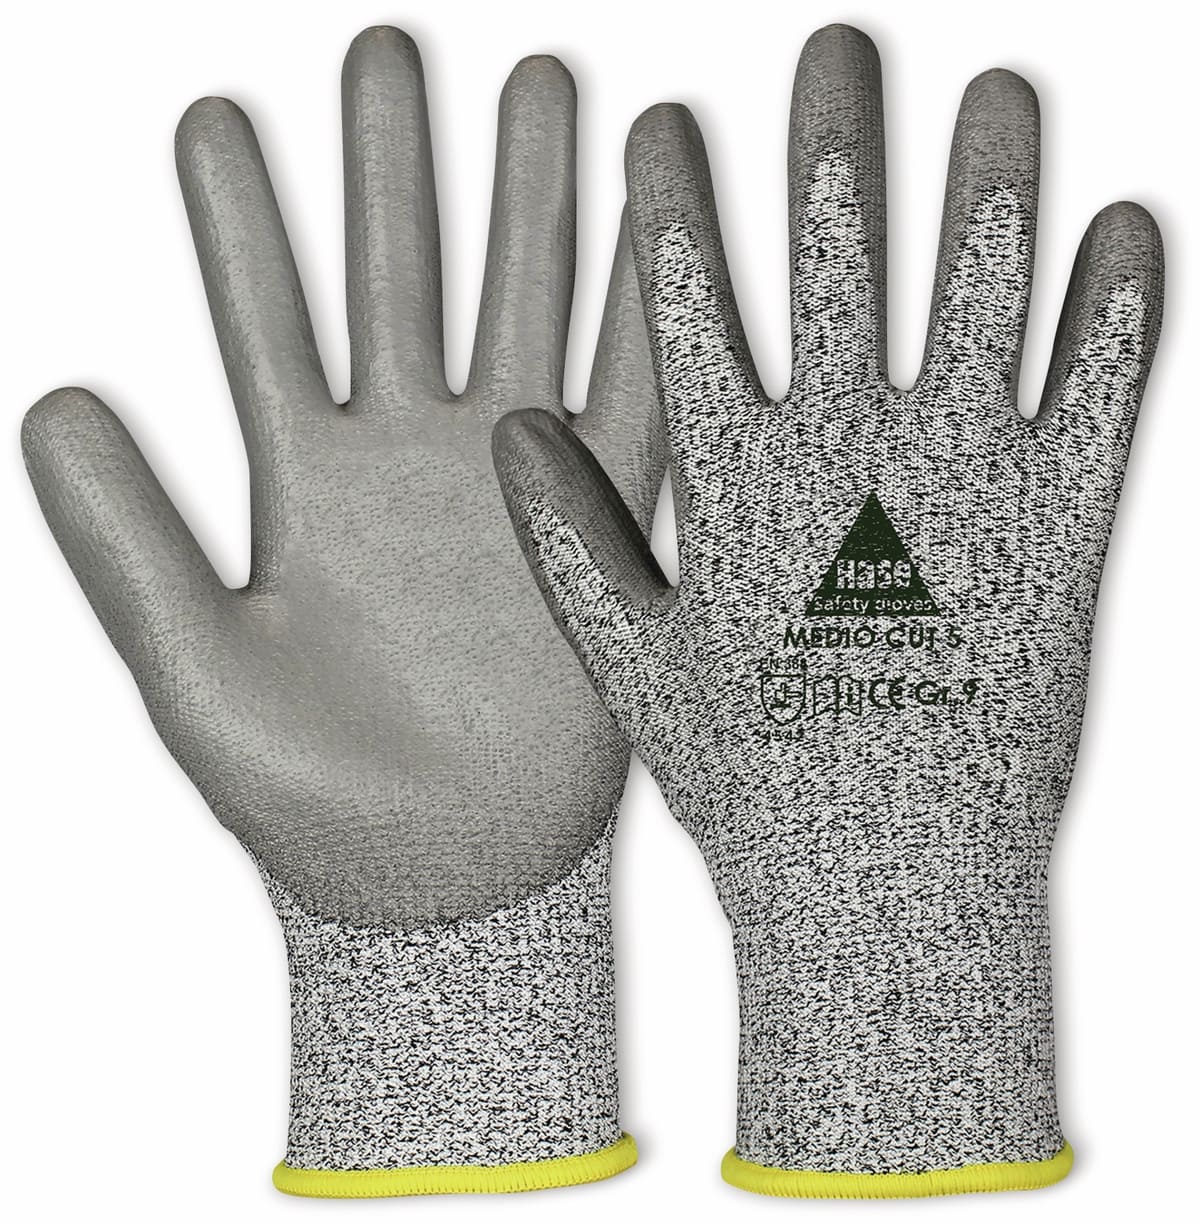 HASE SAFETY GLOVES Schnittschutz-Arbeitshandschuhe Medio Cut 5, EN 388, EN 420, Größe 11 von Hase Safety gloves